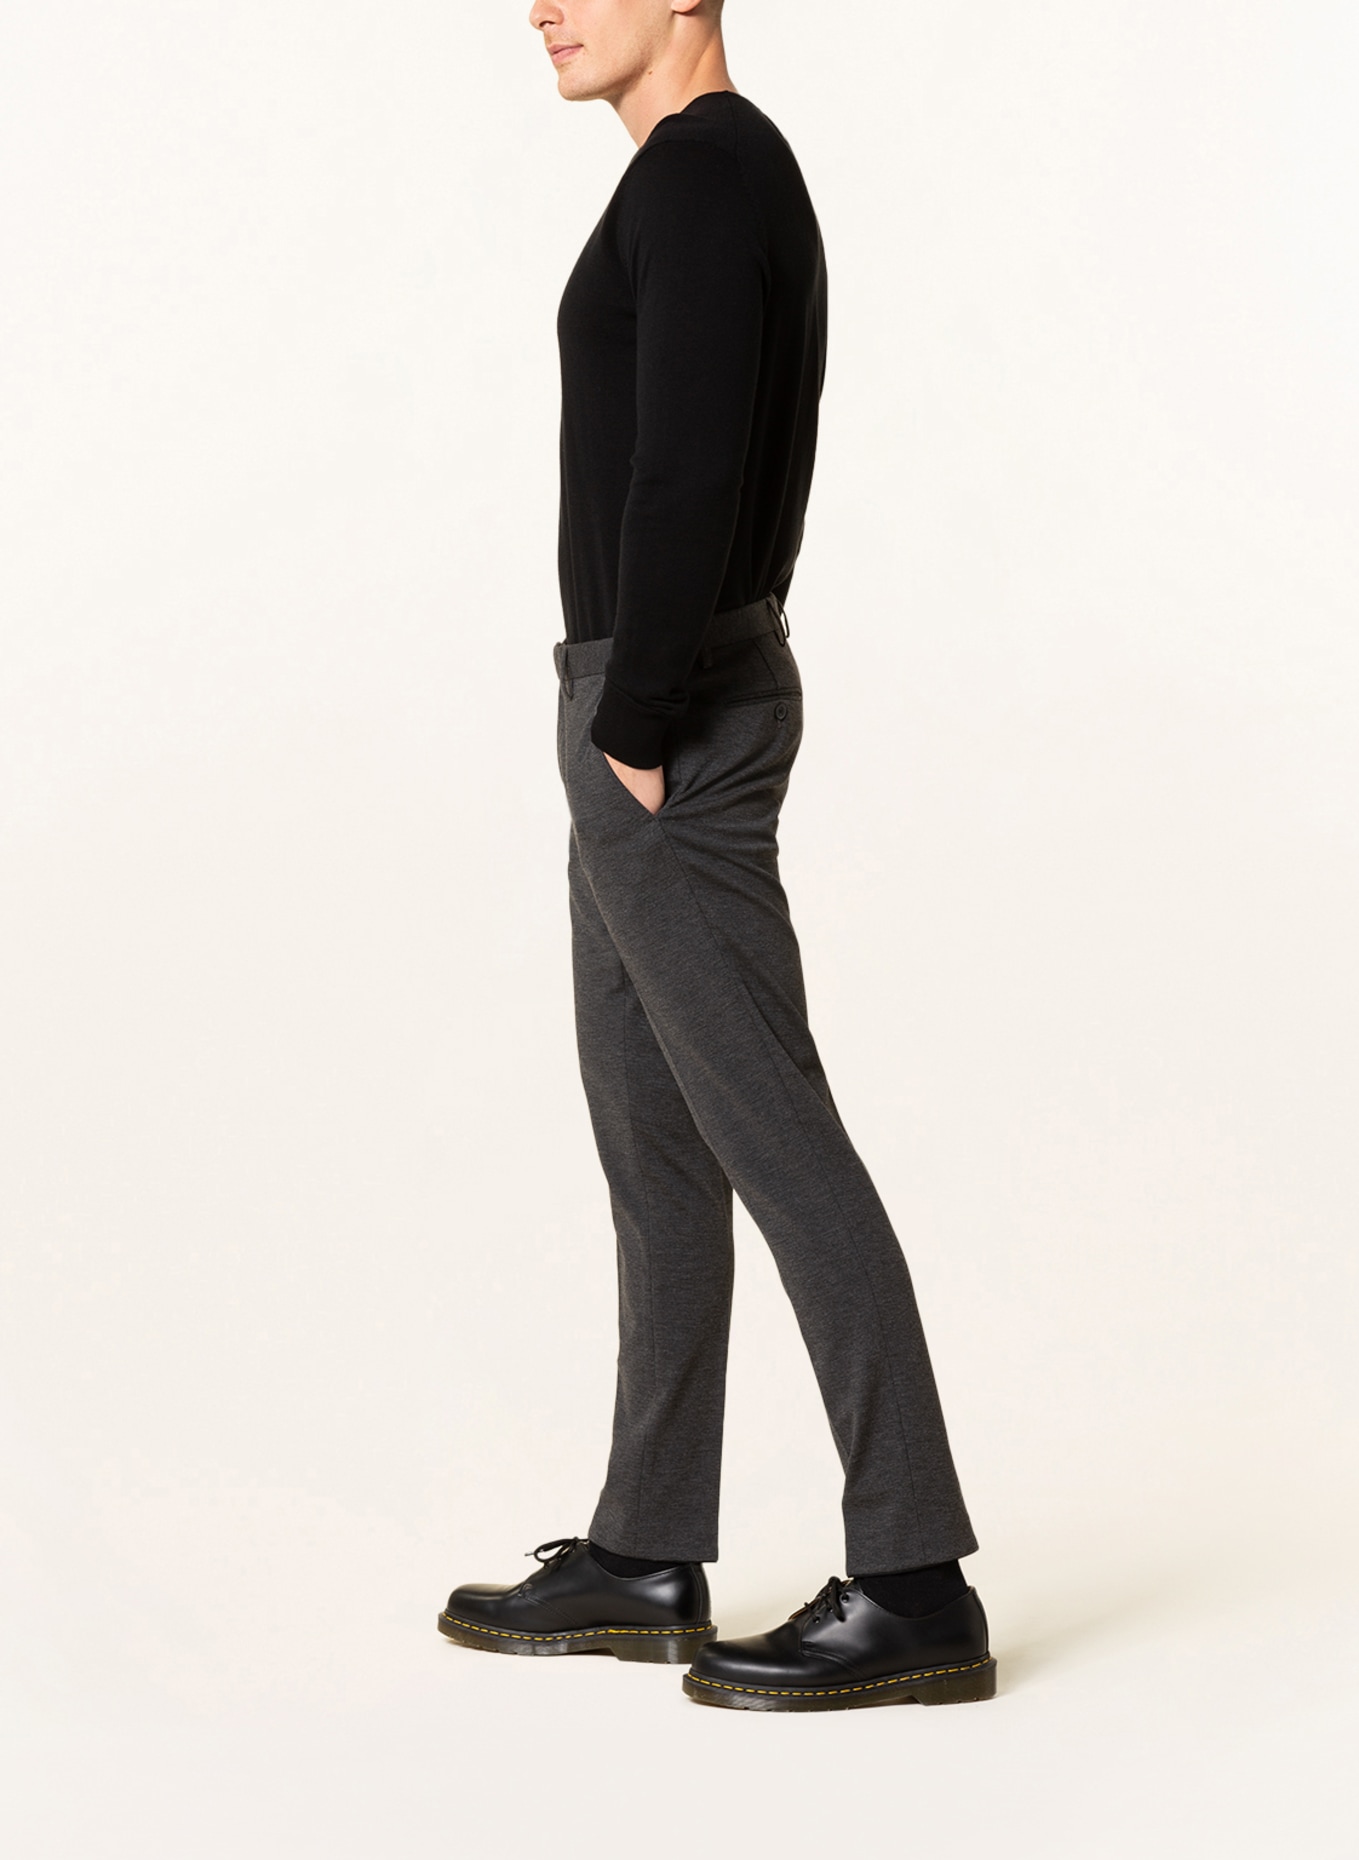 PAUL Suit trousers slim fit, Color: 750 Charcoal (Image 5)